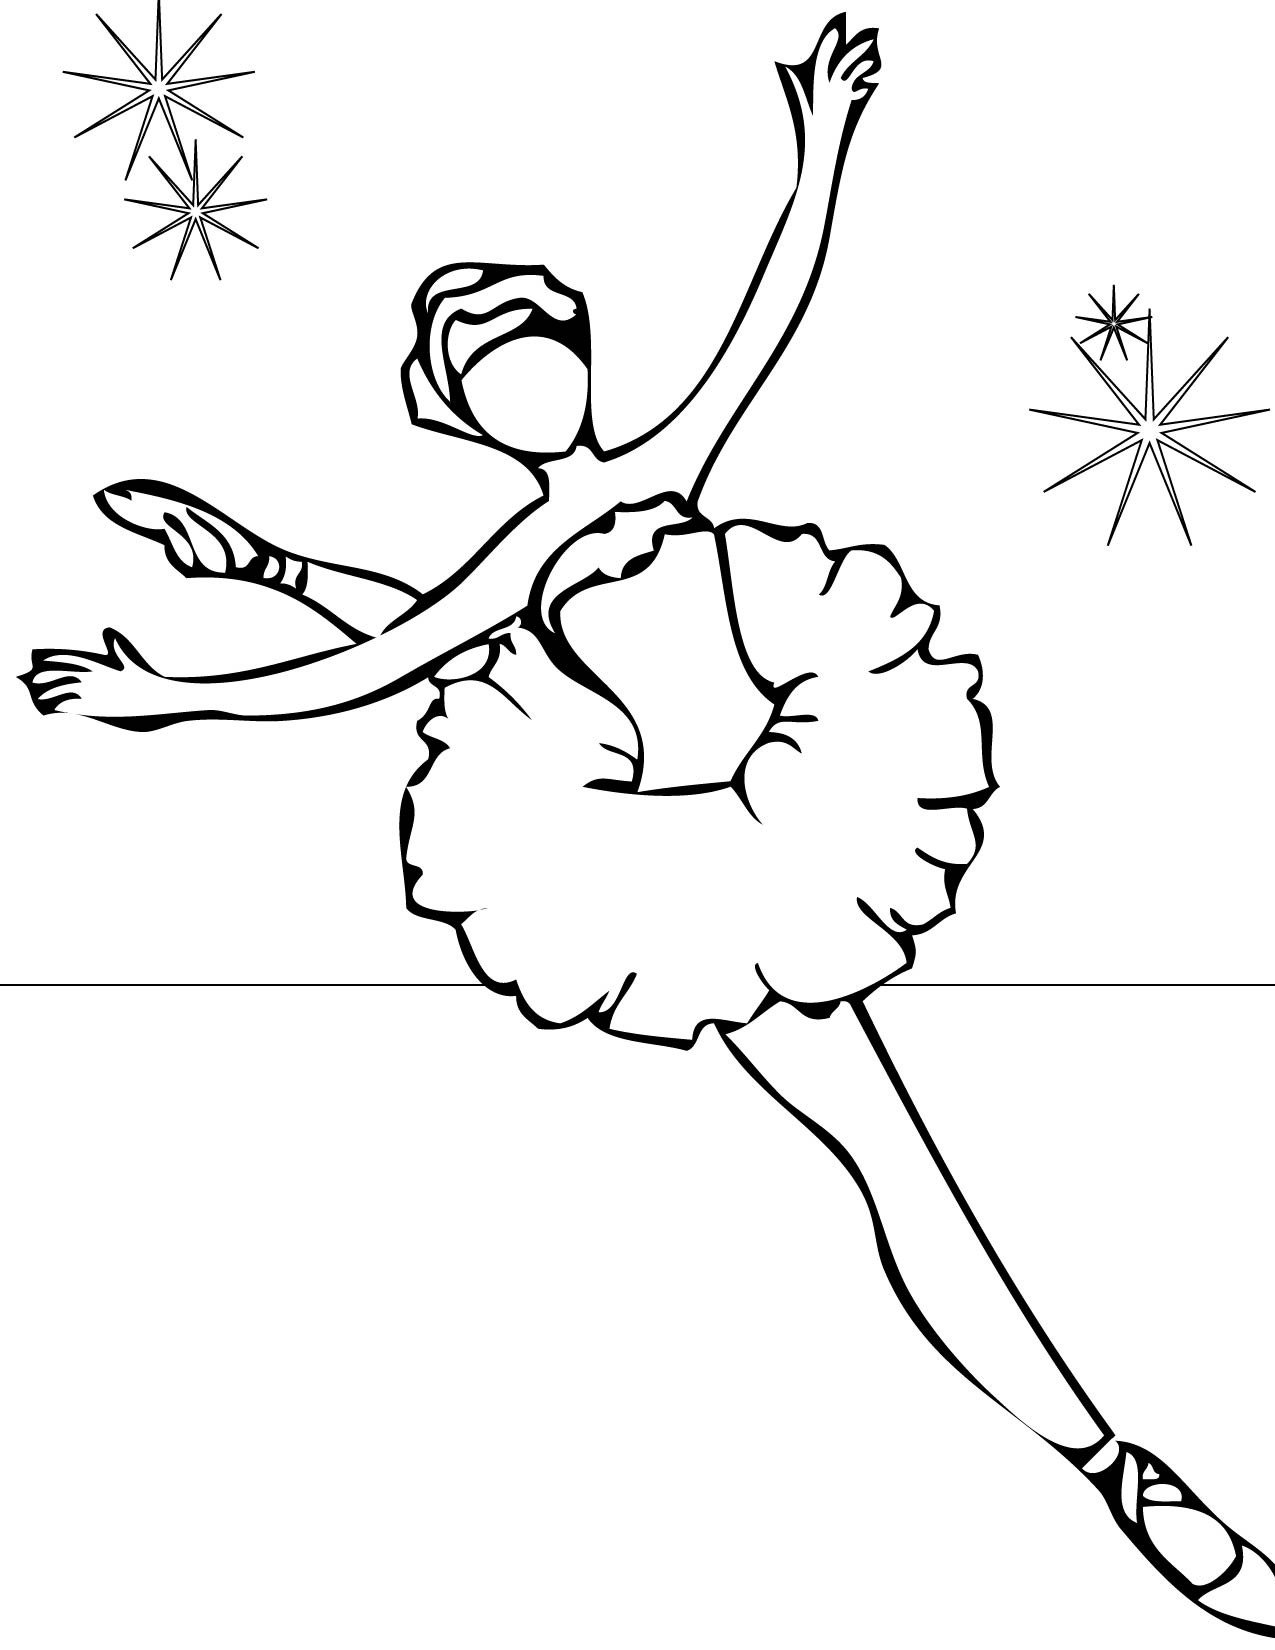 Раскраска: Танцор (Профессии и профессии) #92117 - Бесплатные раскраски для печати